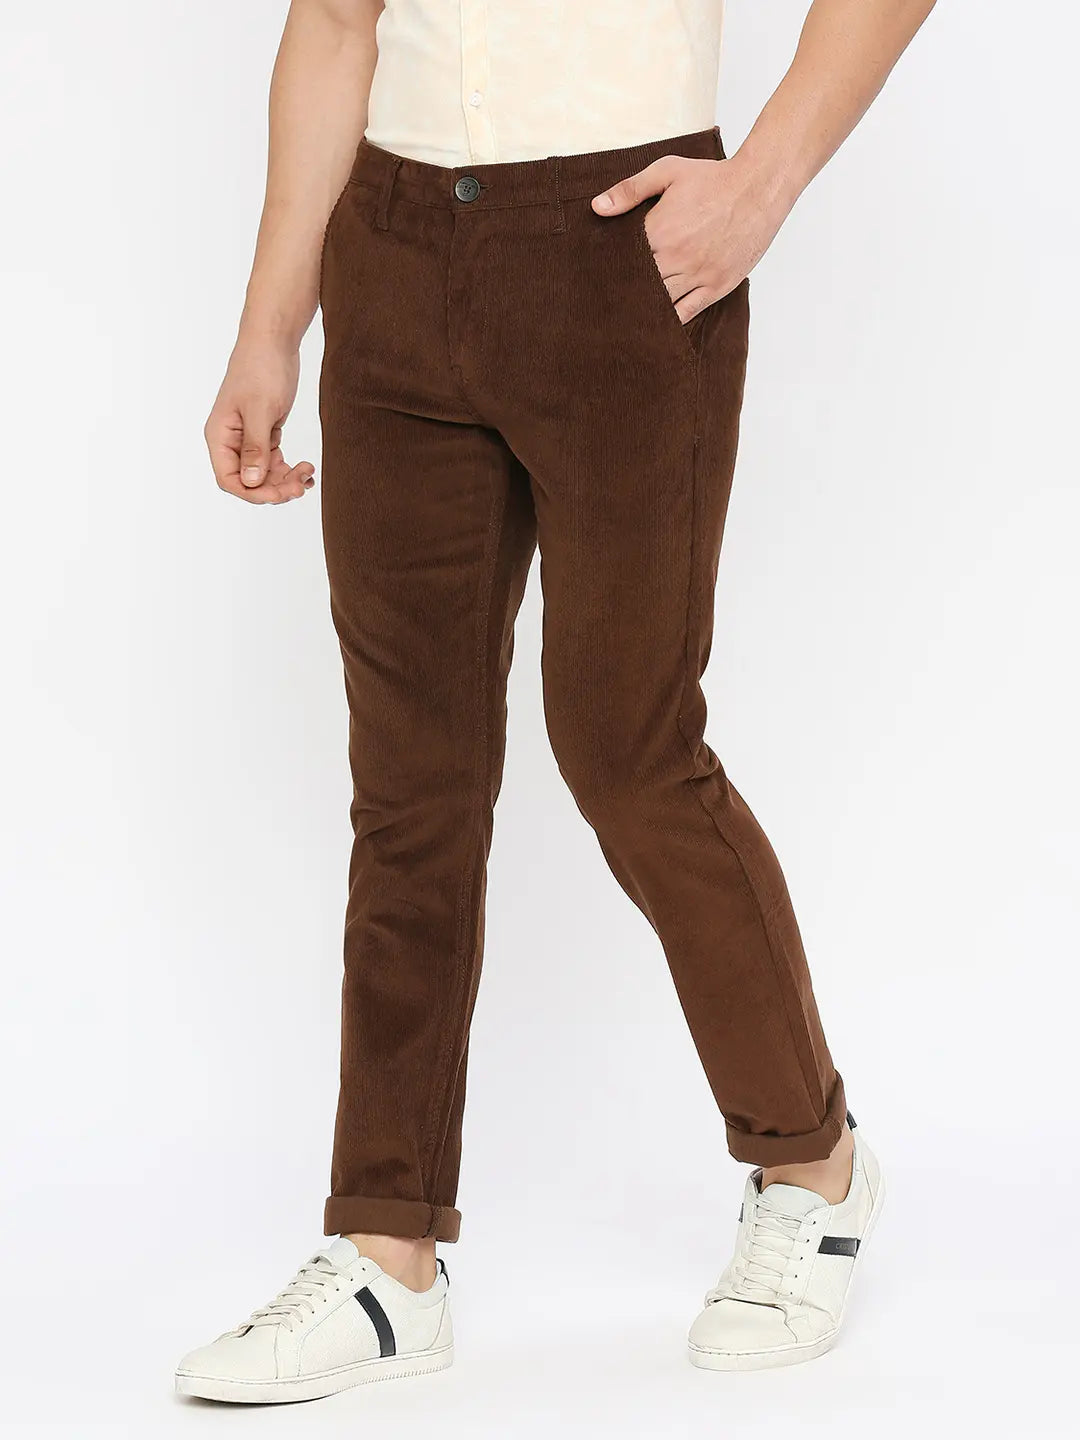 Men's L.L.Bean Stretch Country Corduroy Pants, Classic Fit, Plain Front |  Pants & Jeans at L.L.Bean